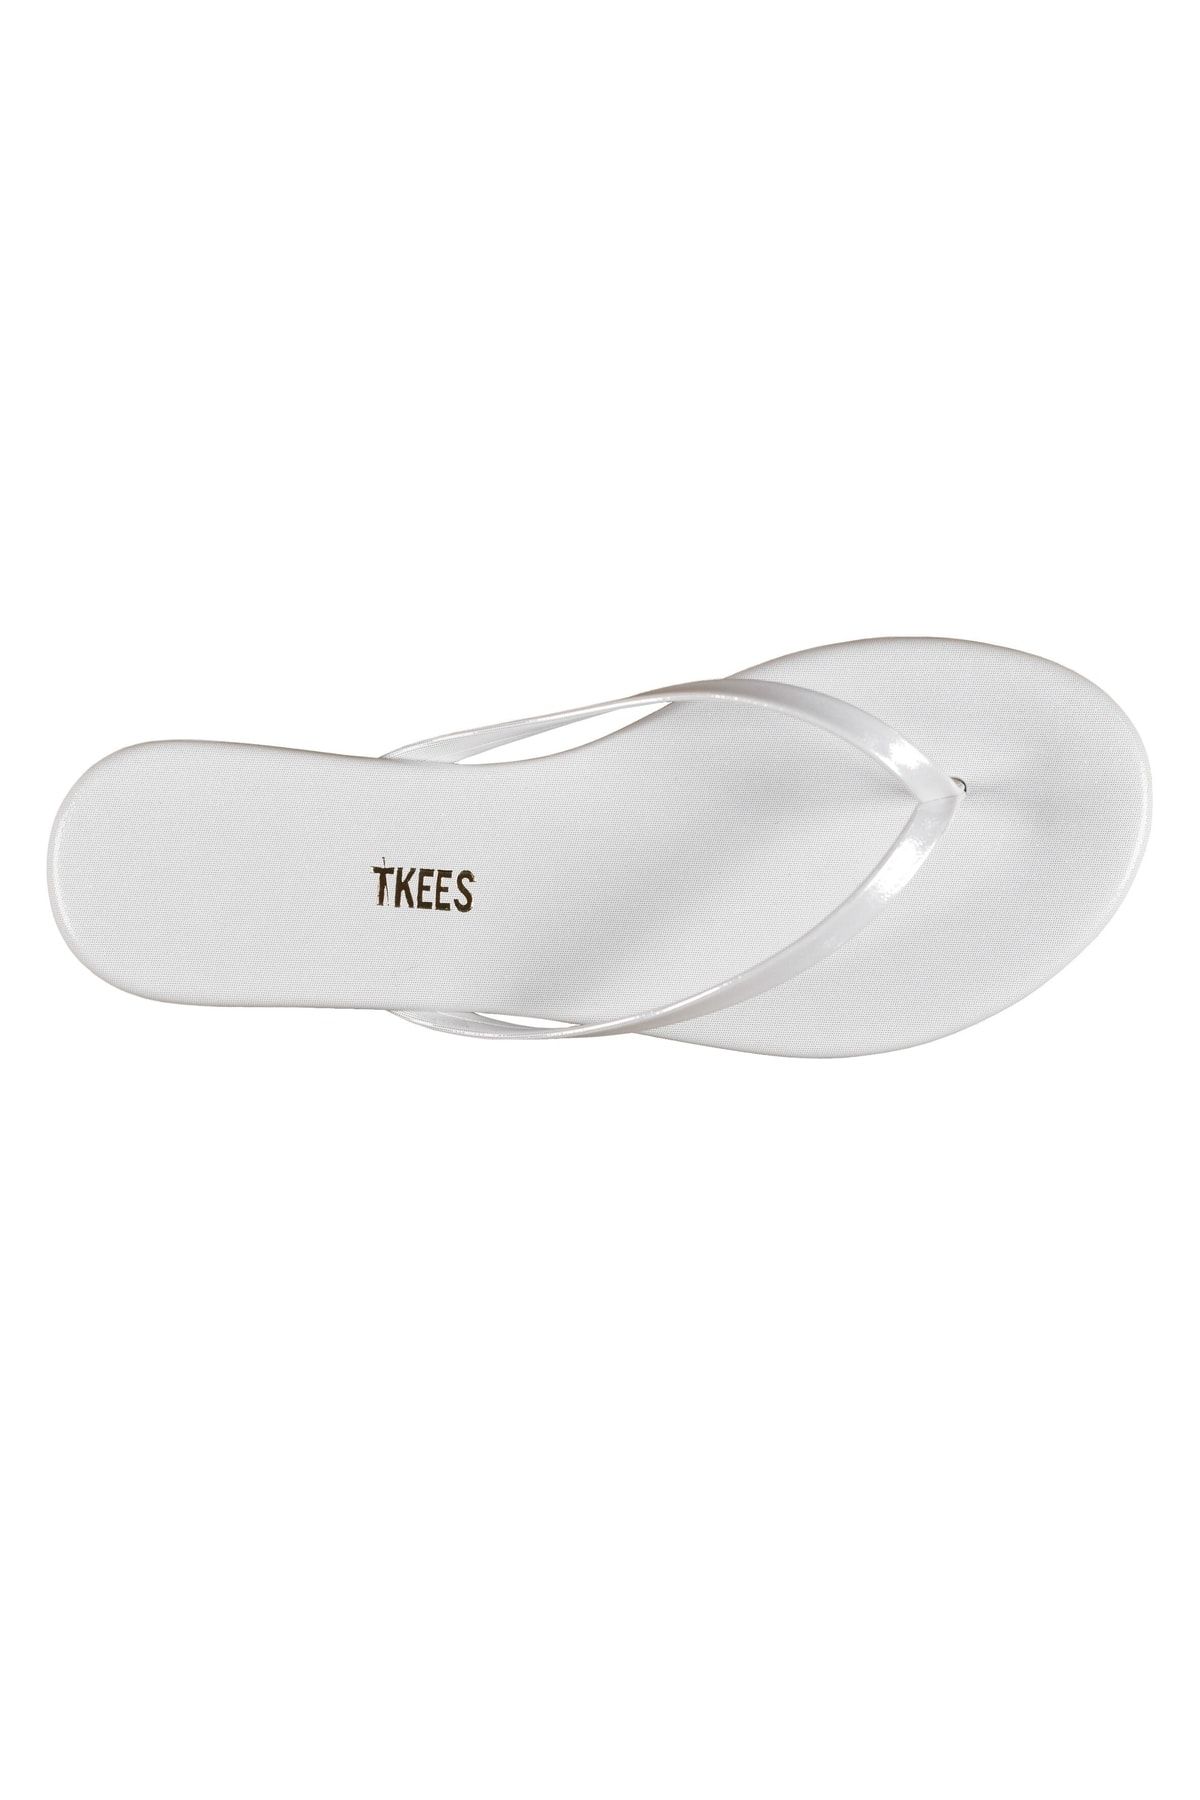 Tkees Tk-2086 Kadın Simli Beyaz Parmakarası Terlik